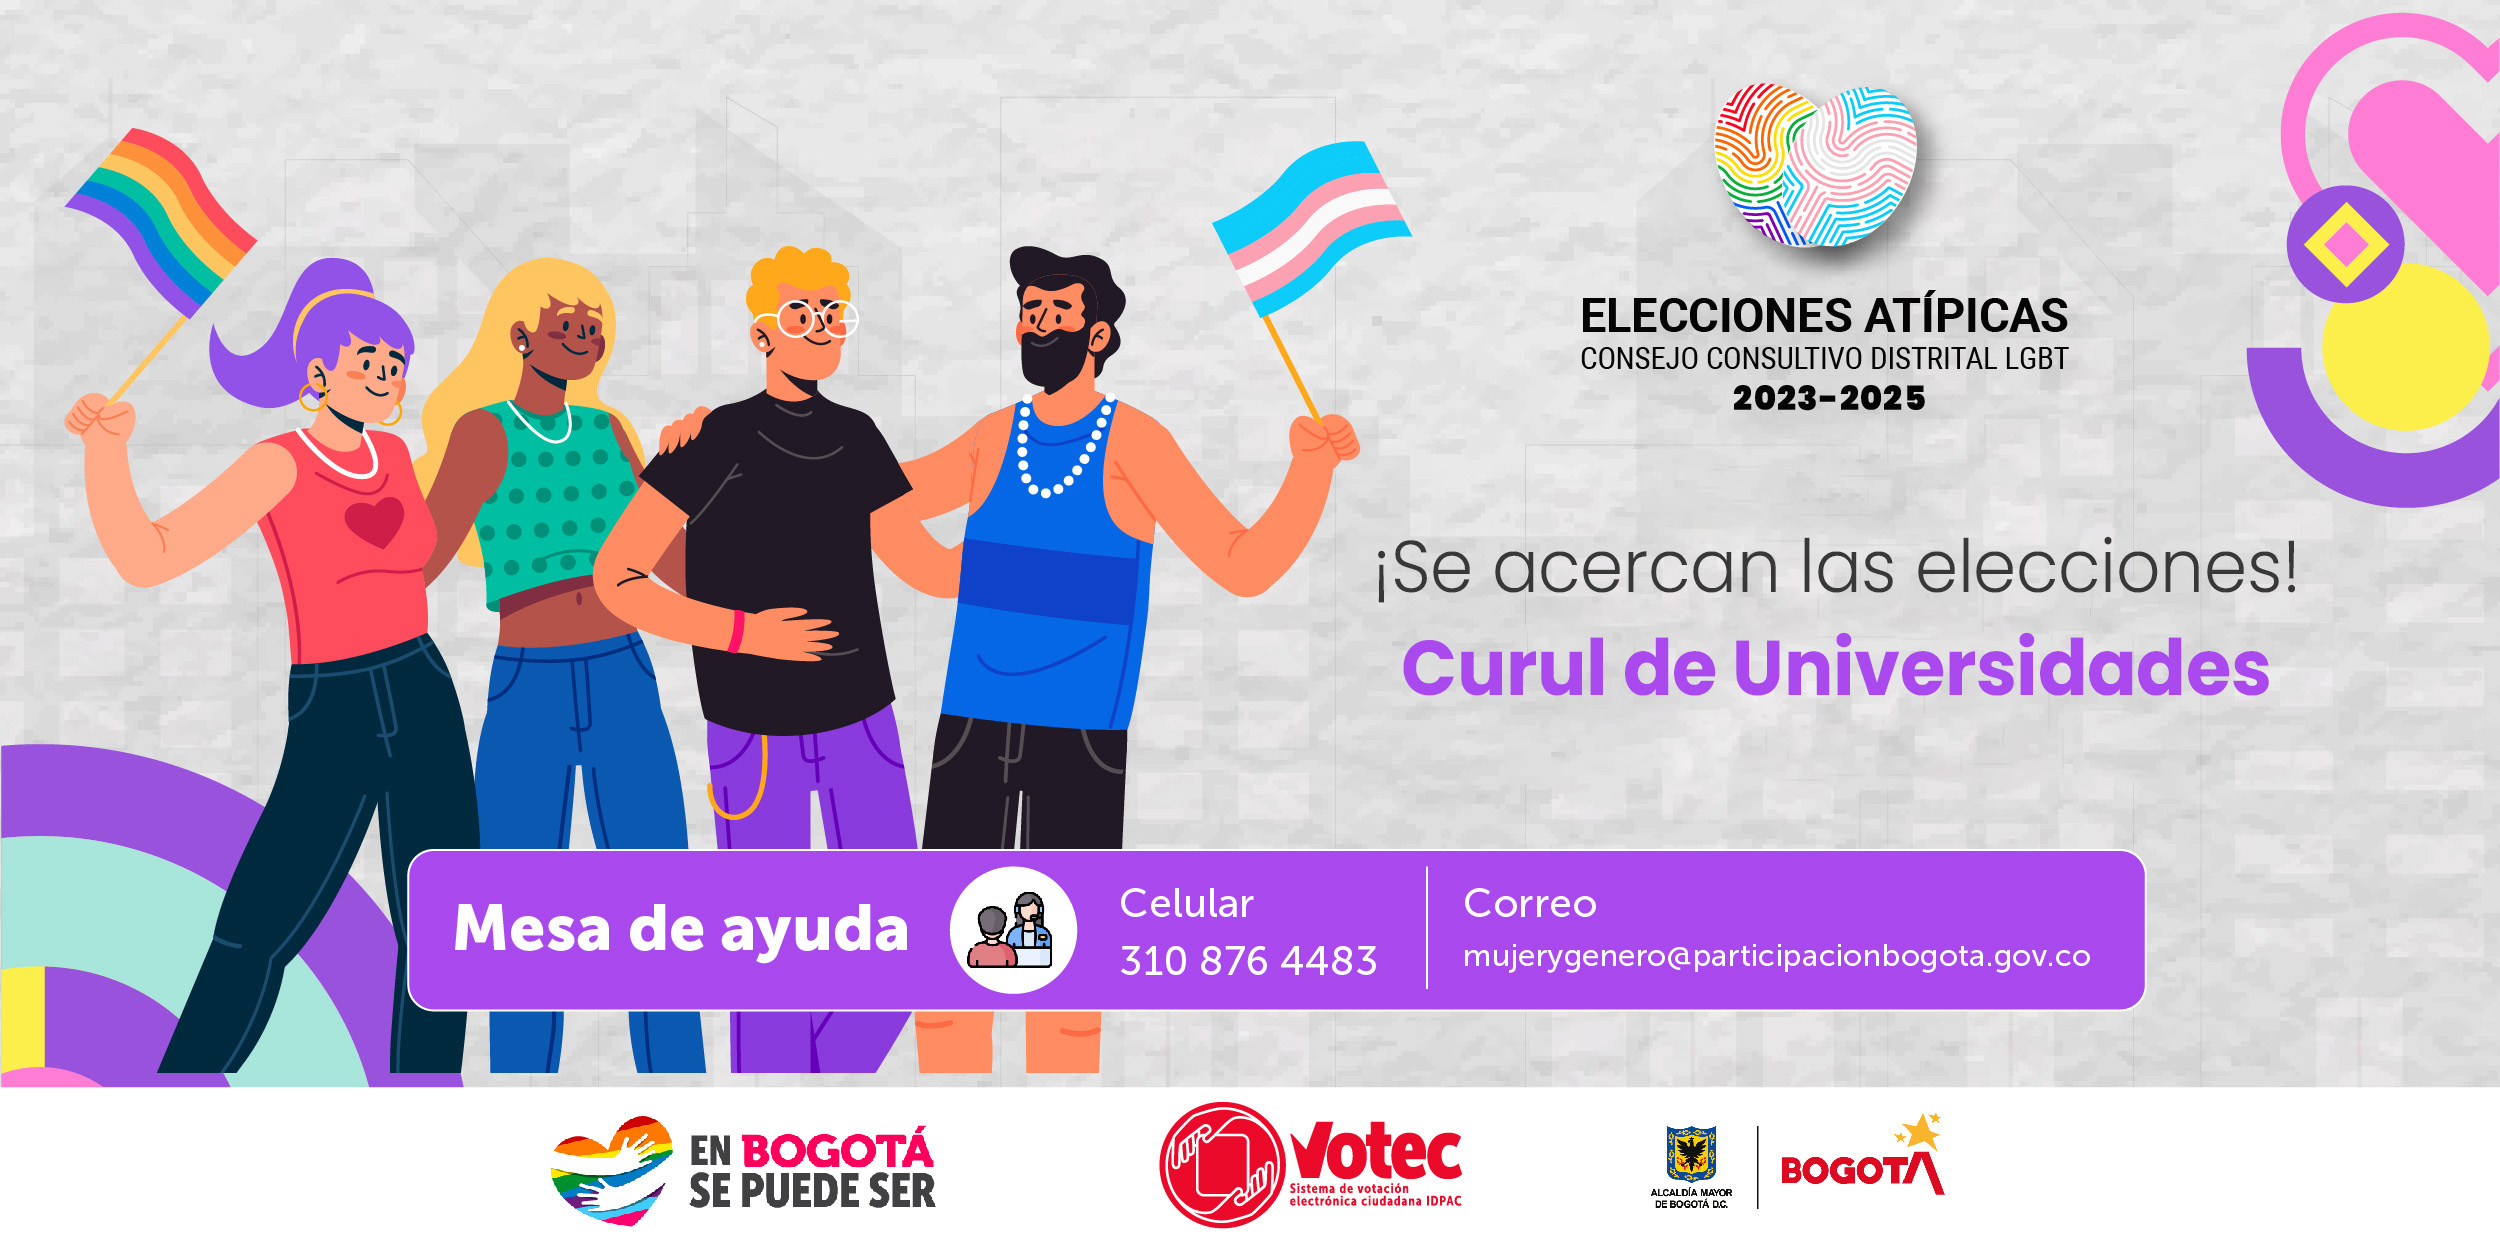 Se acercan las elecciones del Consejo Consultivo Distrital LGBT 2023 - 2025 